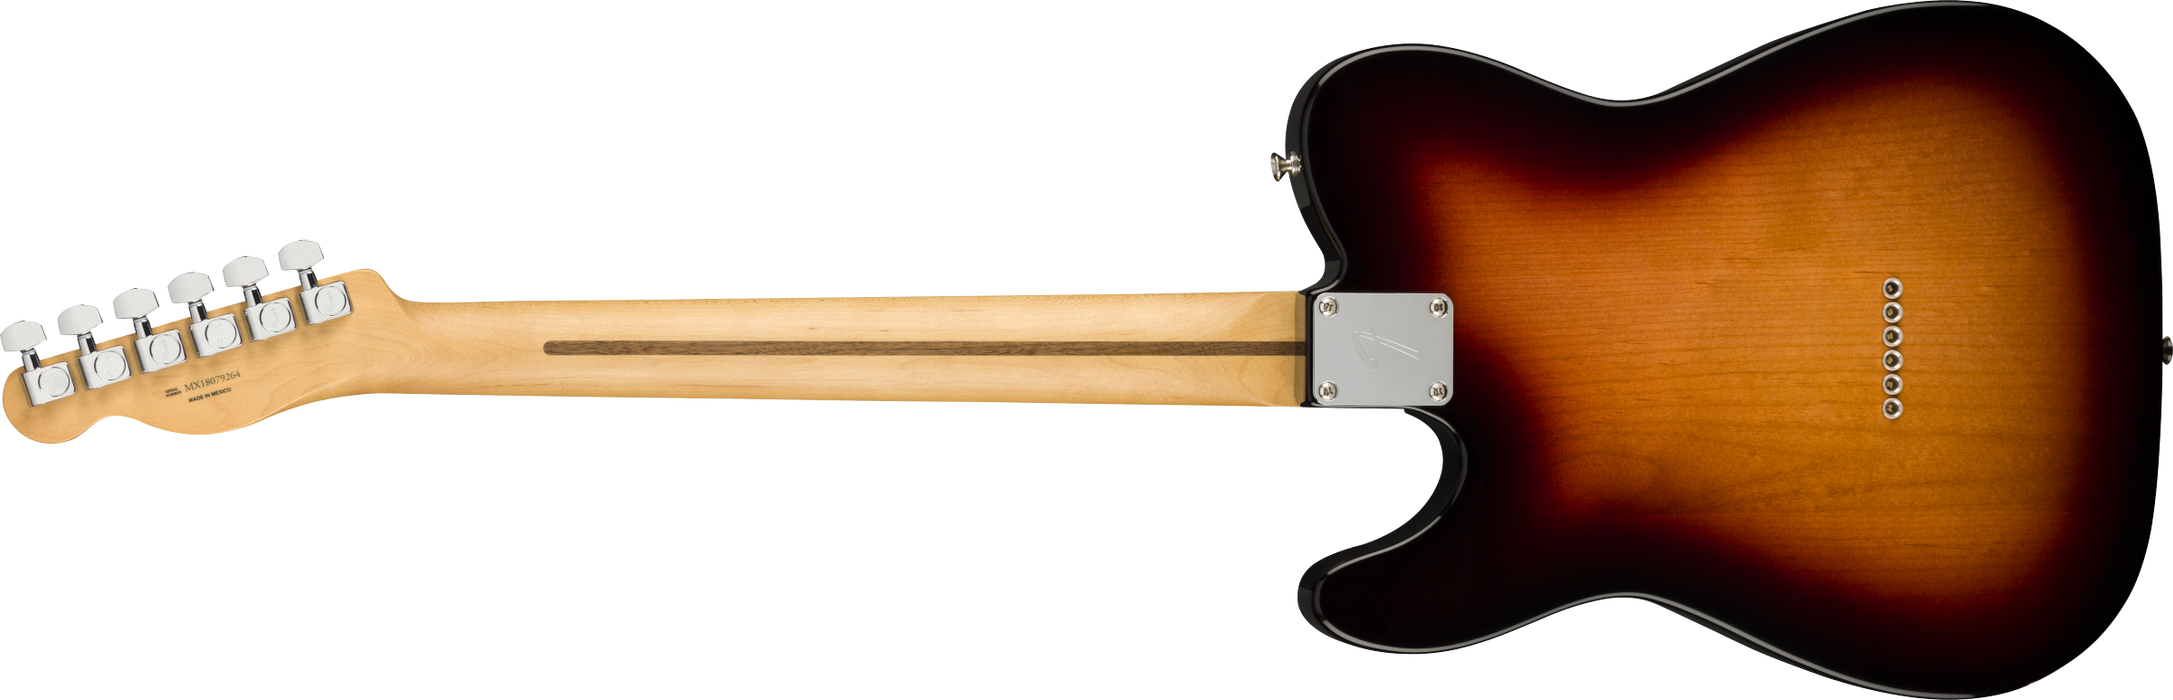 Fender Player Telecaster Maple Fingerboard - 3-Color Sunburst